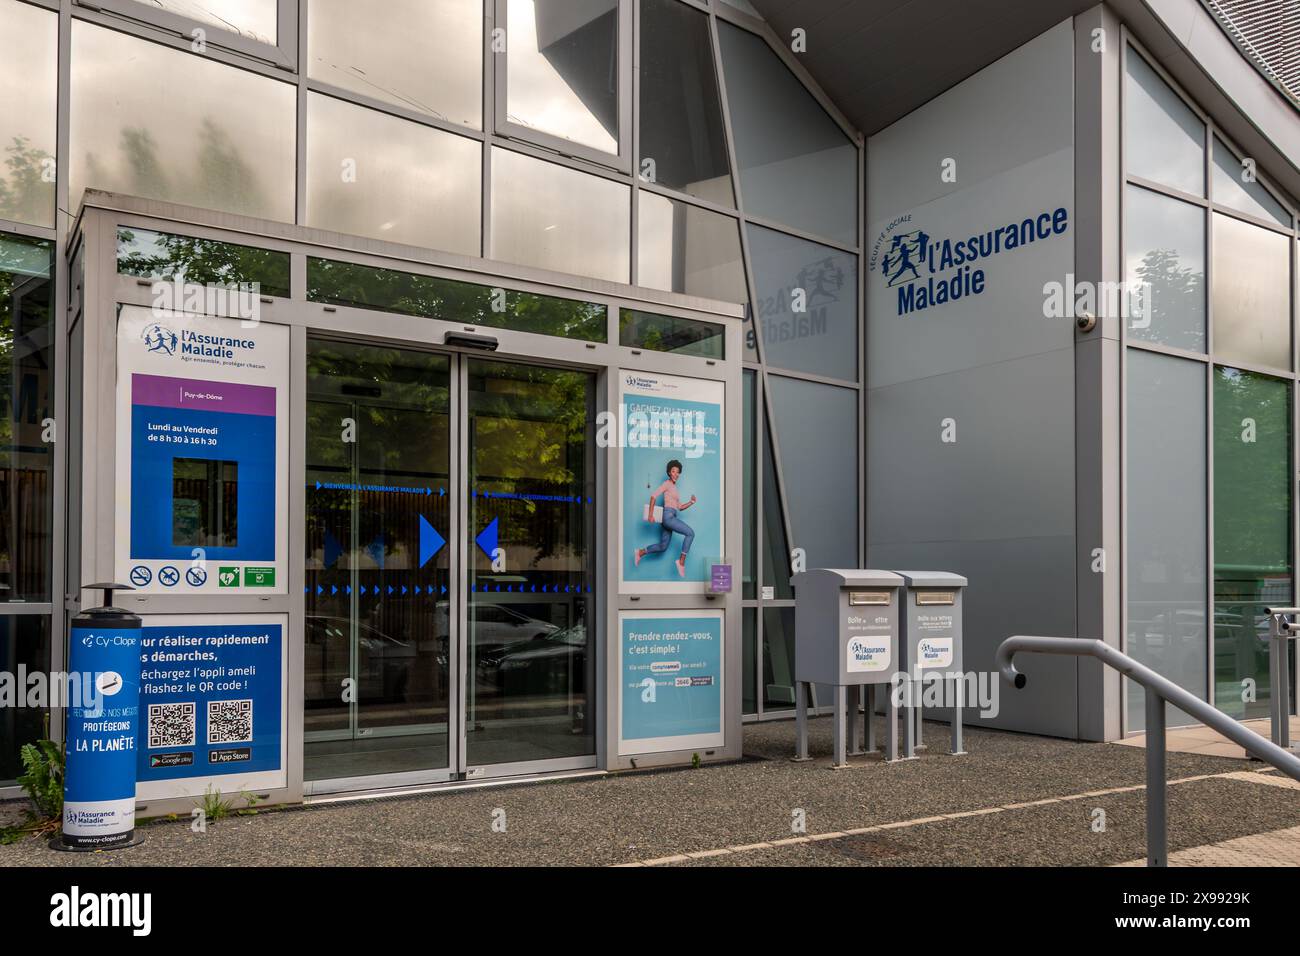 Entrée principale d'un bureau local de l'assurance maladie française (assurance maladie), la branche santé de la sécurité sociale en France Banque D'Images